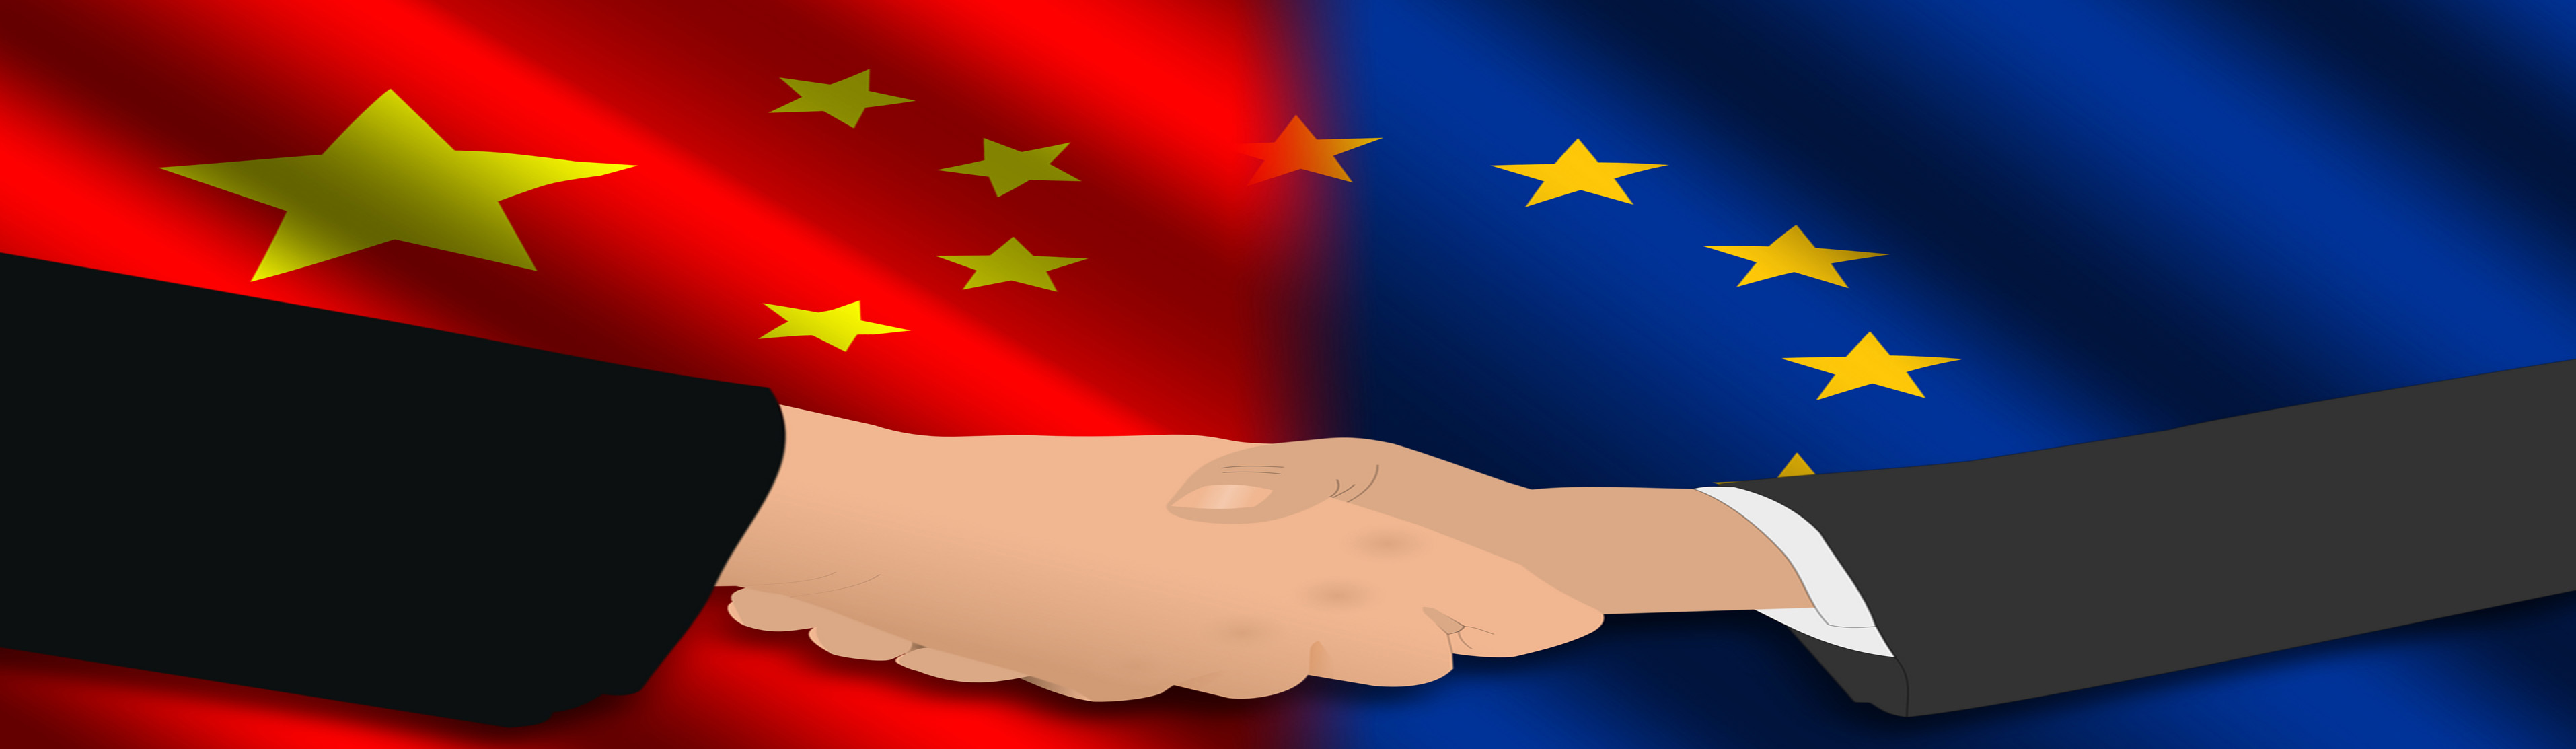 China-Eropa-20160713193612